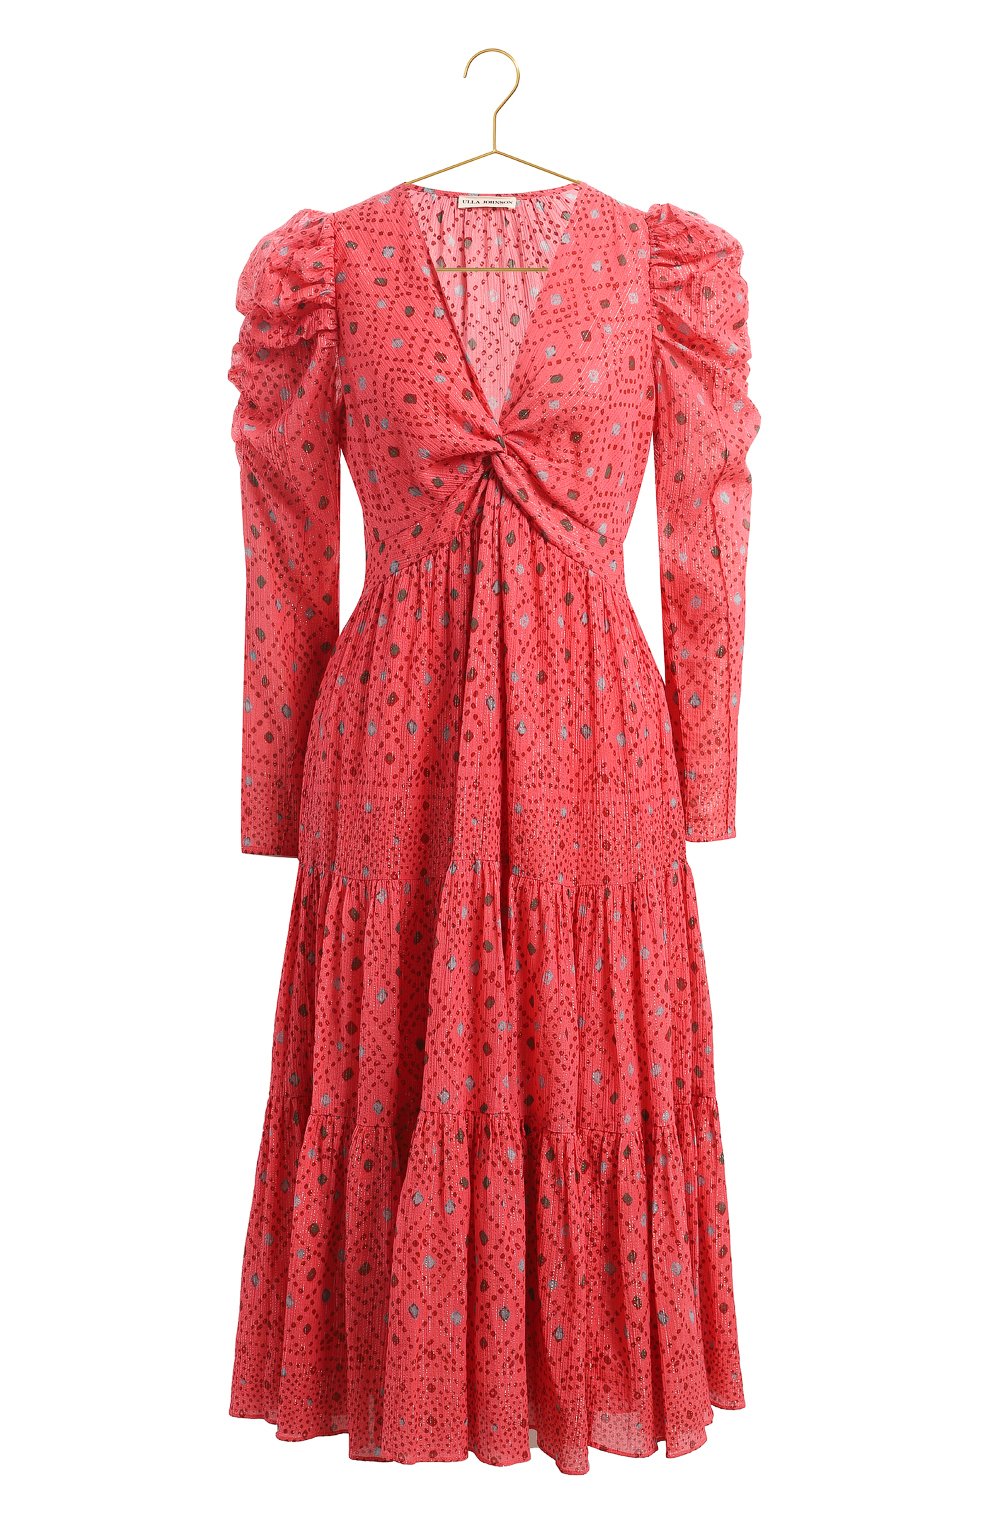 Платье из хлопка и вискозы | Ulla Johnson | Красный - 1